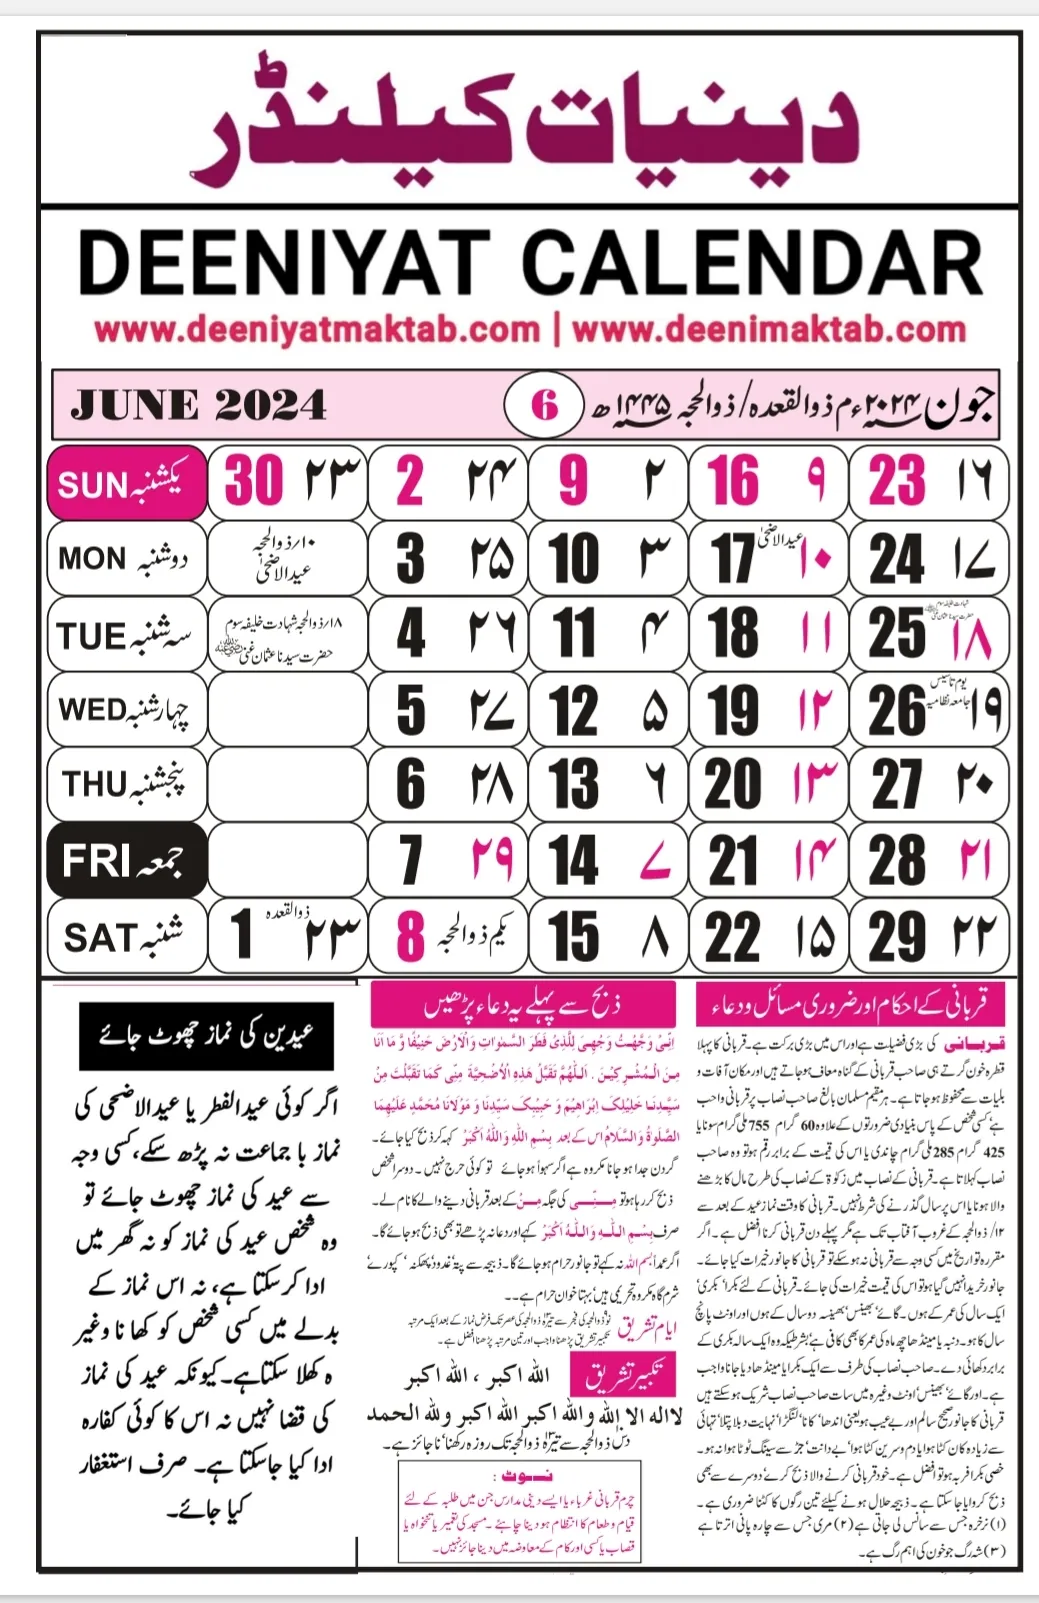 Diniyat calendar 2024